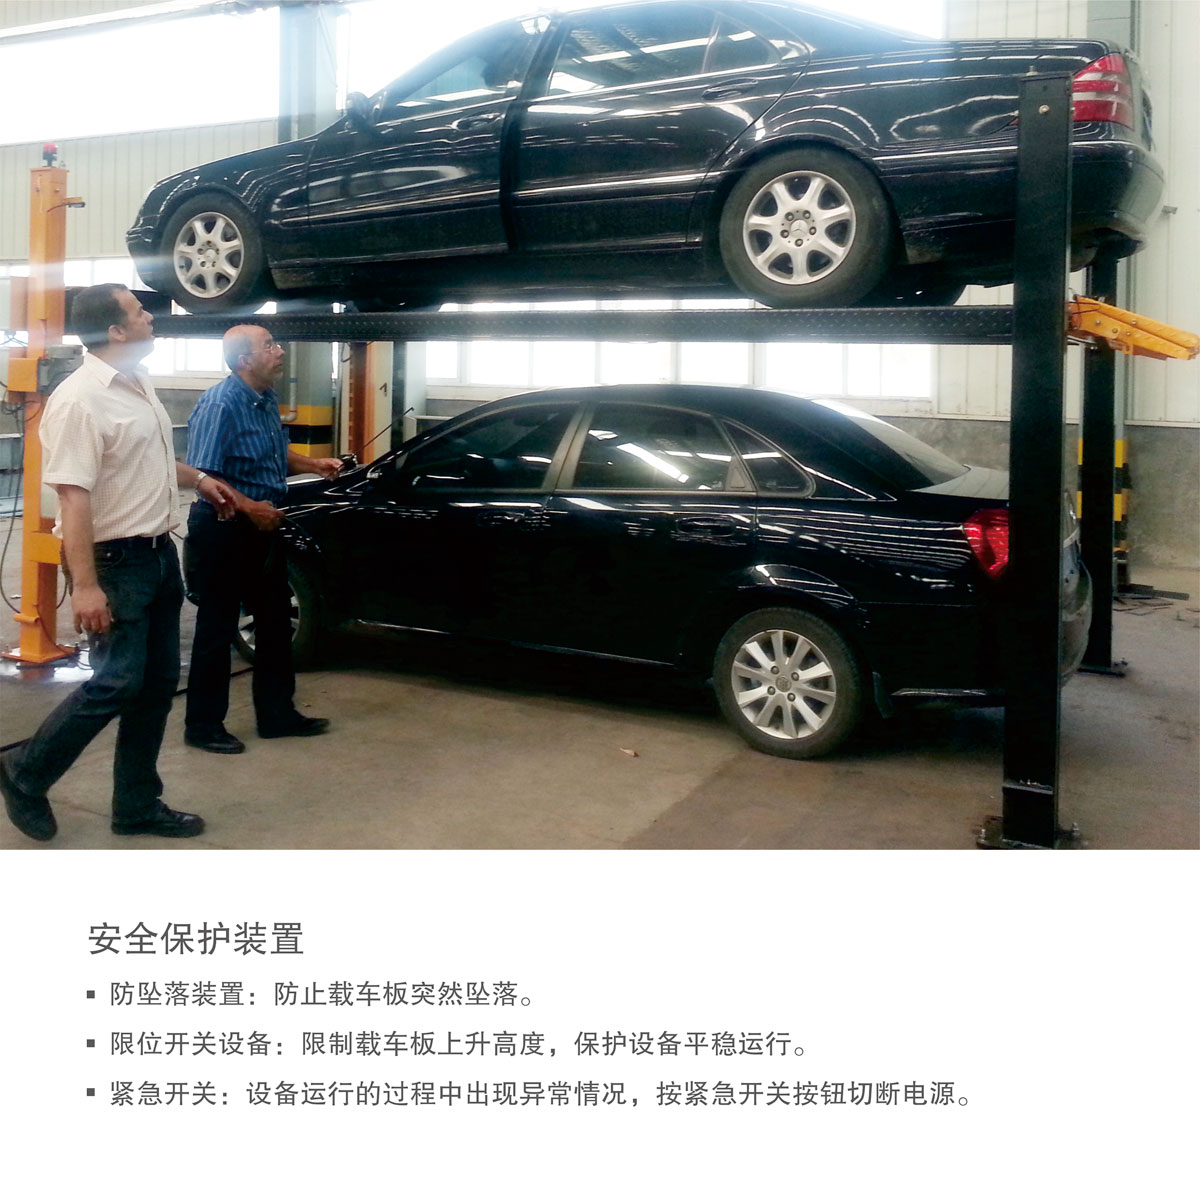 贵阳莱贝PJS四柱简易升降机械式立体停车库安全保护装置.jpg